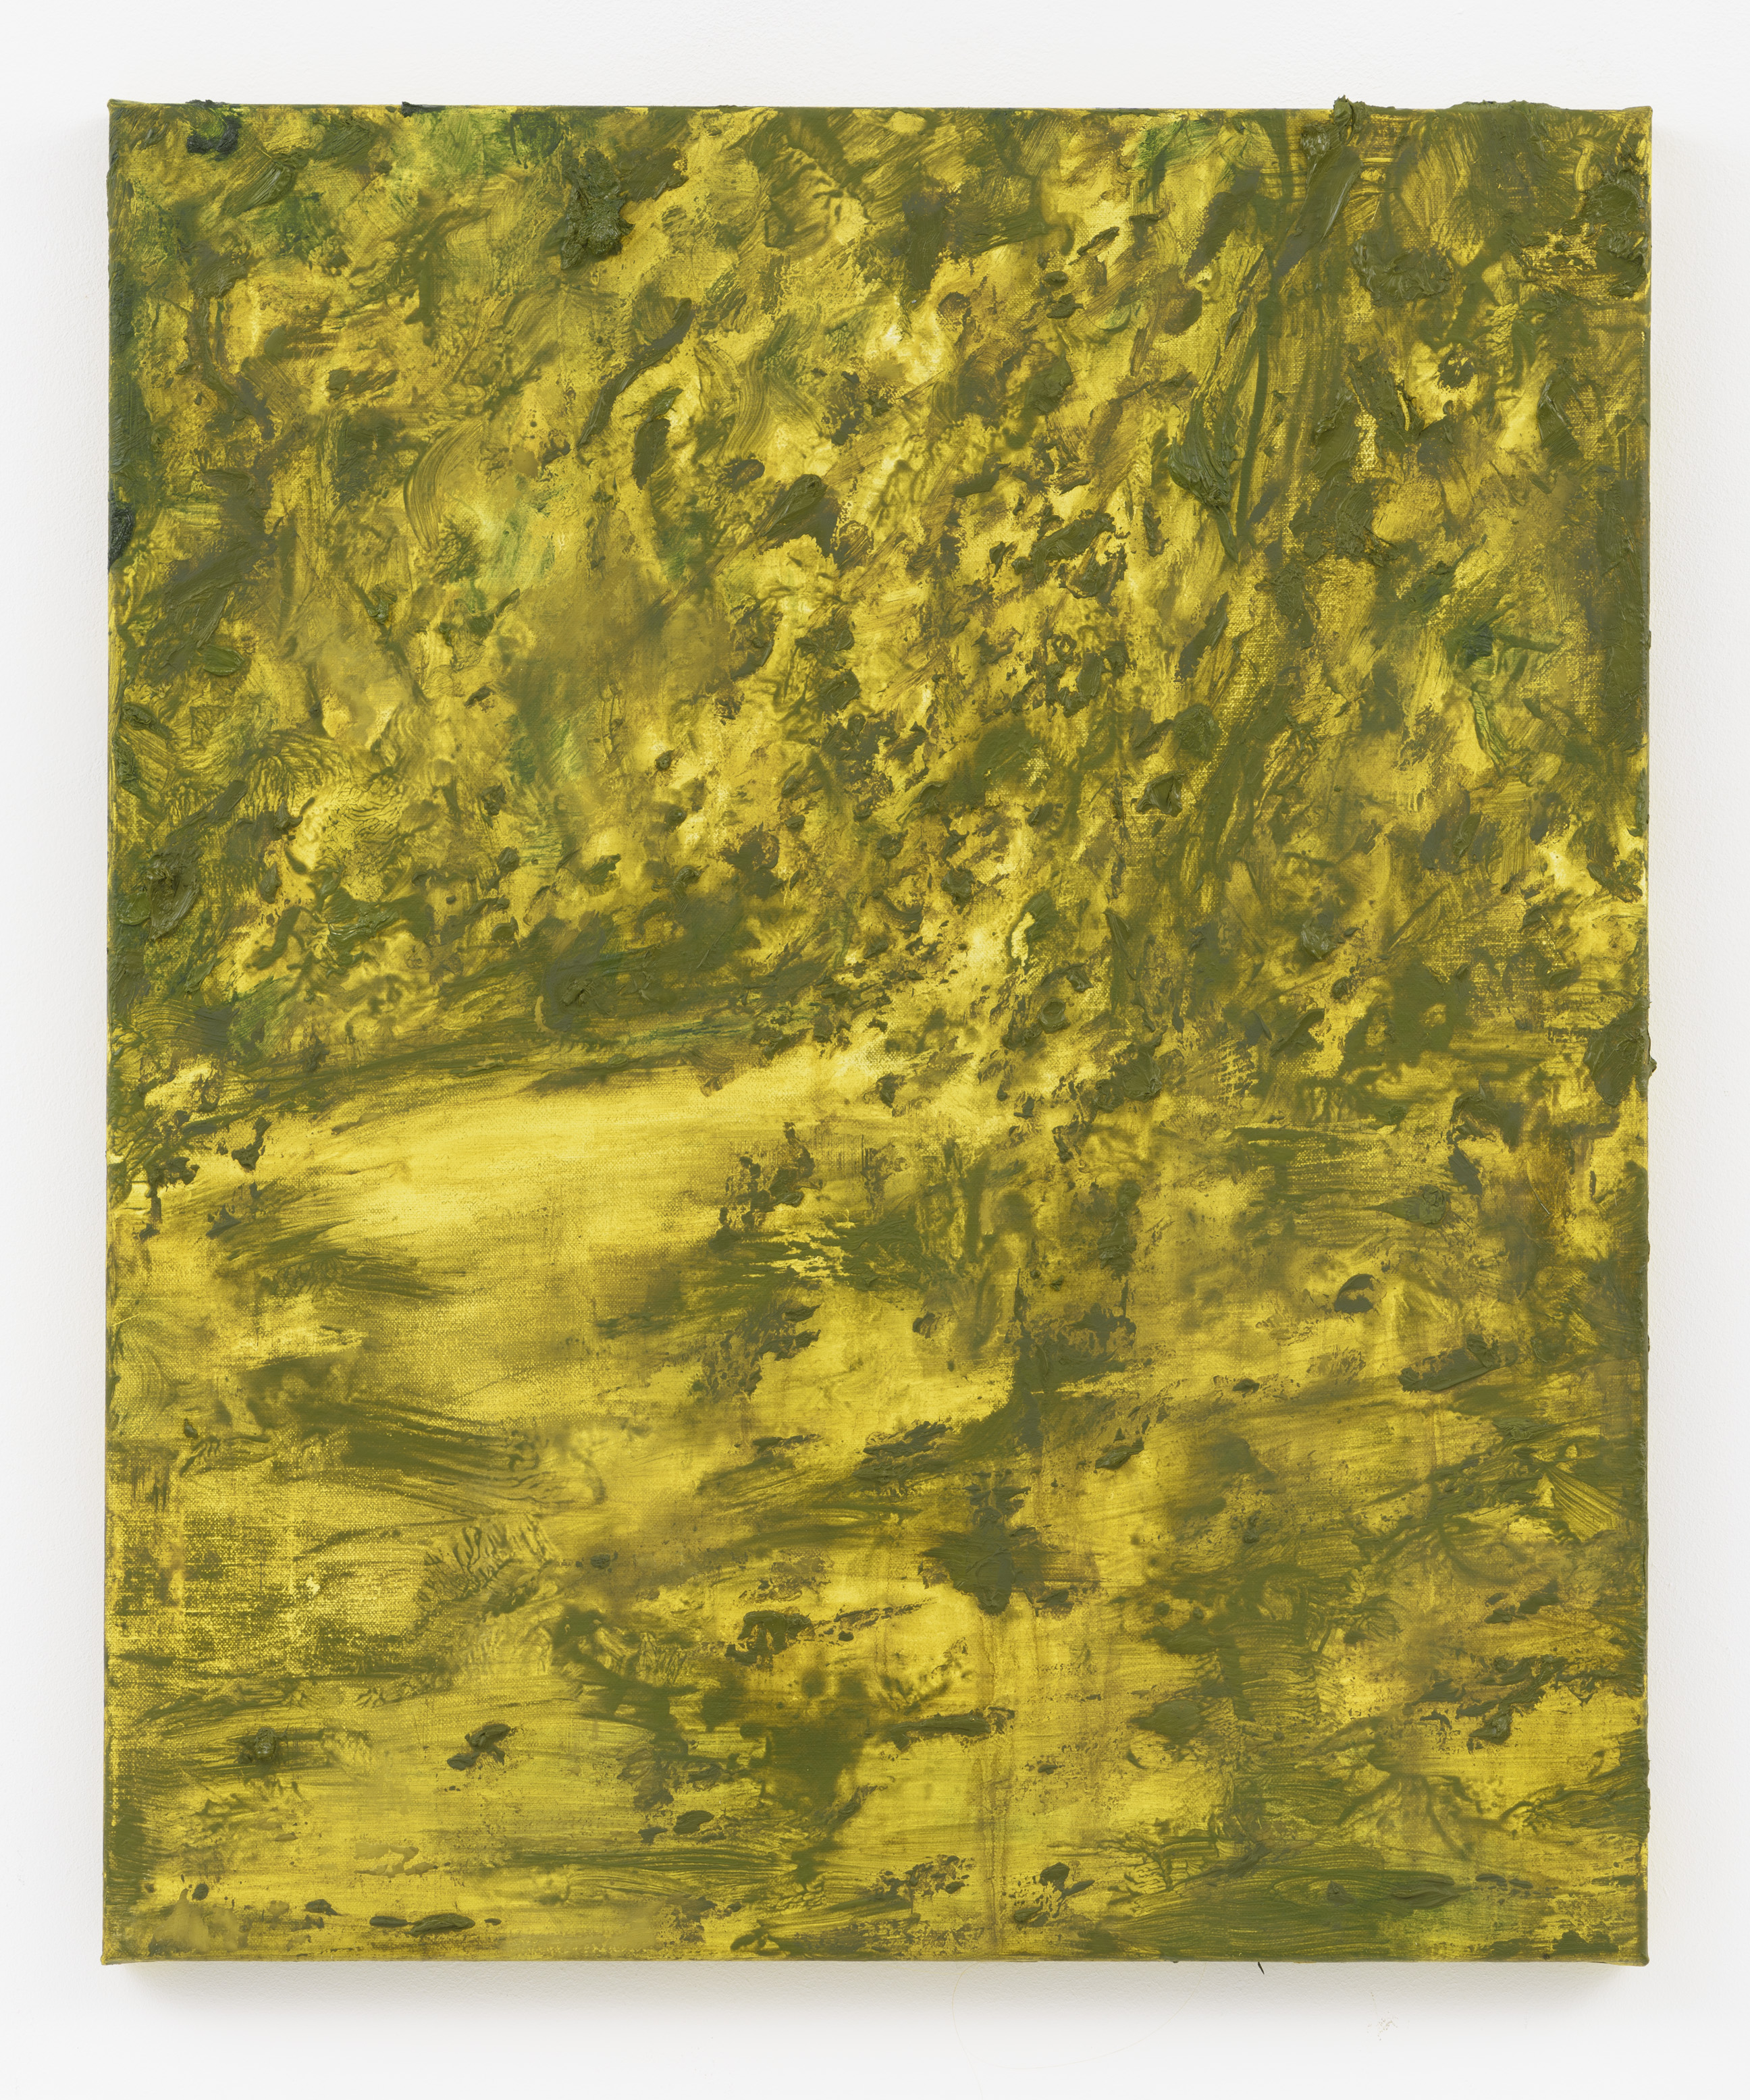 "Paisagem Dourada II" 60 x 50 cm. oil on linen 2015